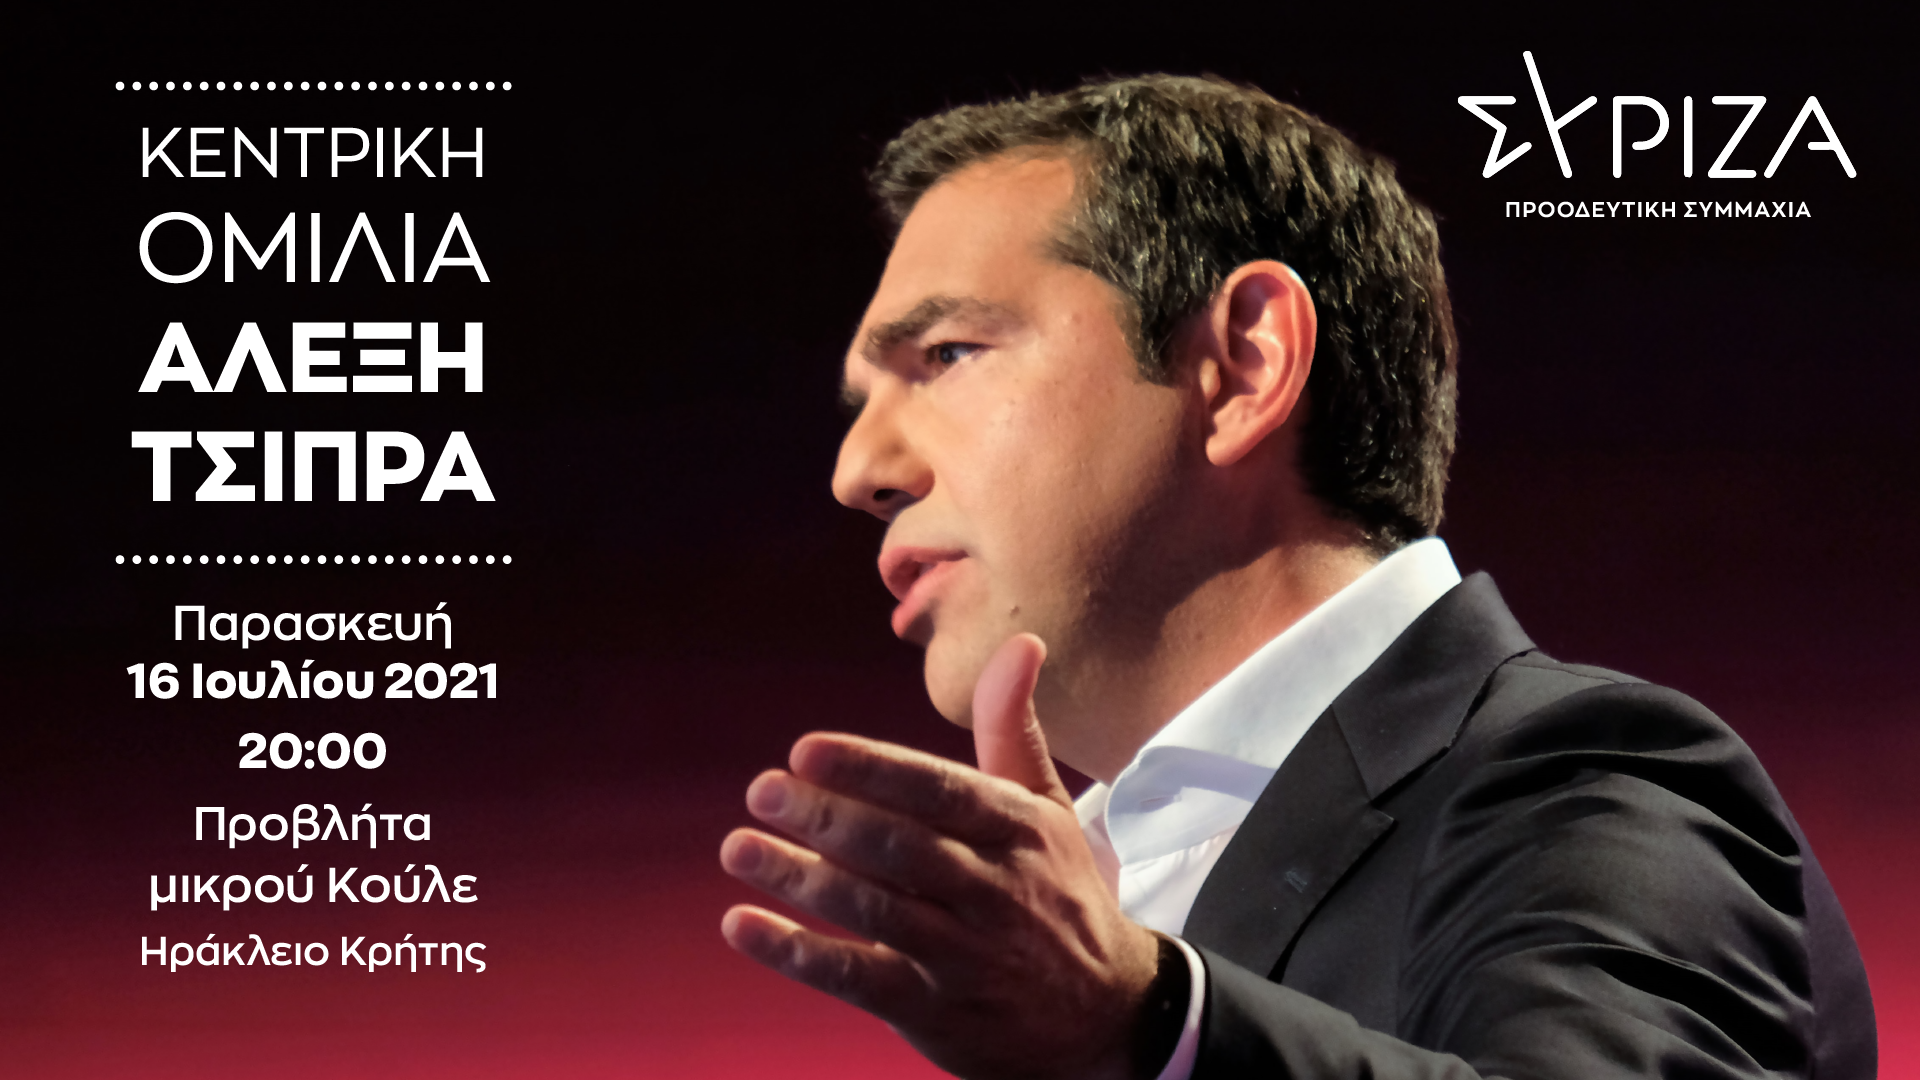  Ομιλία του Προέδρου του ΣΥΡΙΖΑ-Προοδευτική Συμμαχία, Αλέξη Τσίπρα, σε κεντρική πολιτική εκδήλωση του ΣΥΡΙΖΑ-Π.Σ. στο Ηράκλειο Κρήτης - Παρασκευή 16/7 – 8 μ.μ.